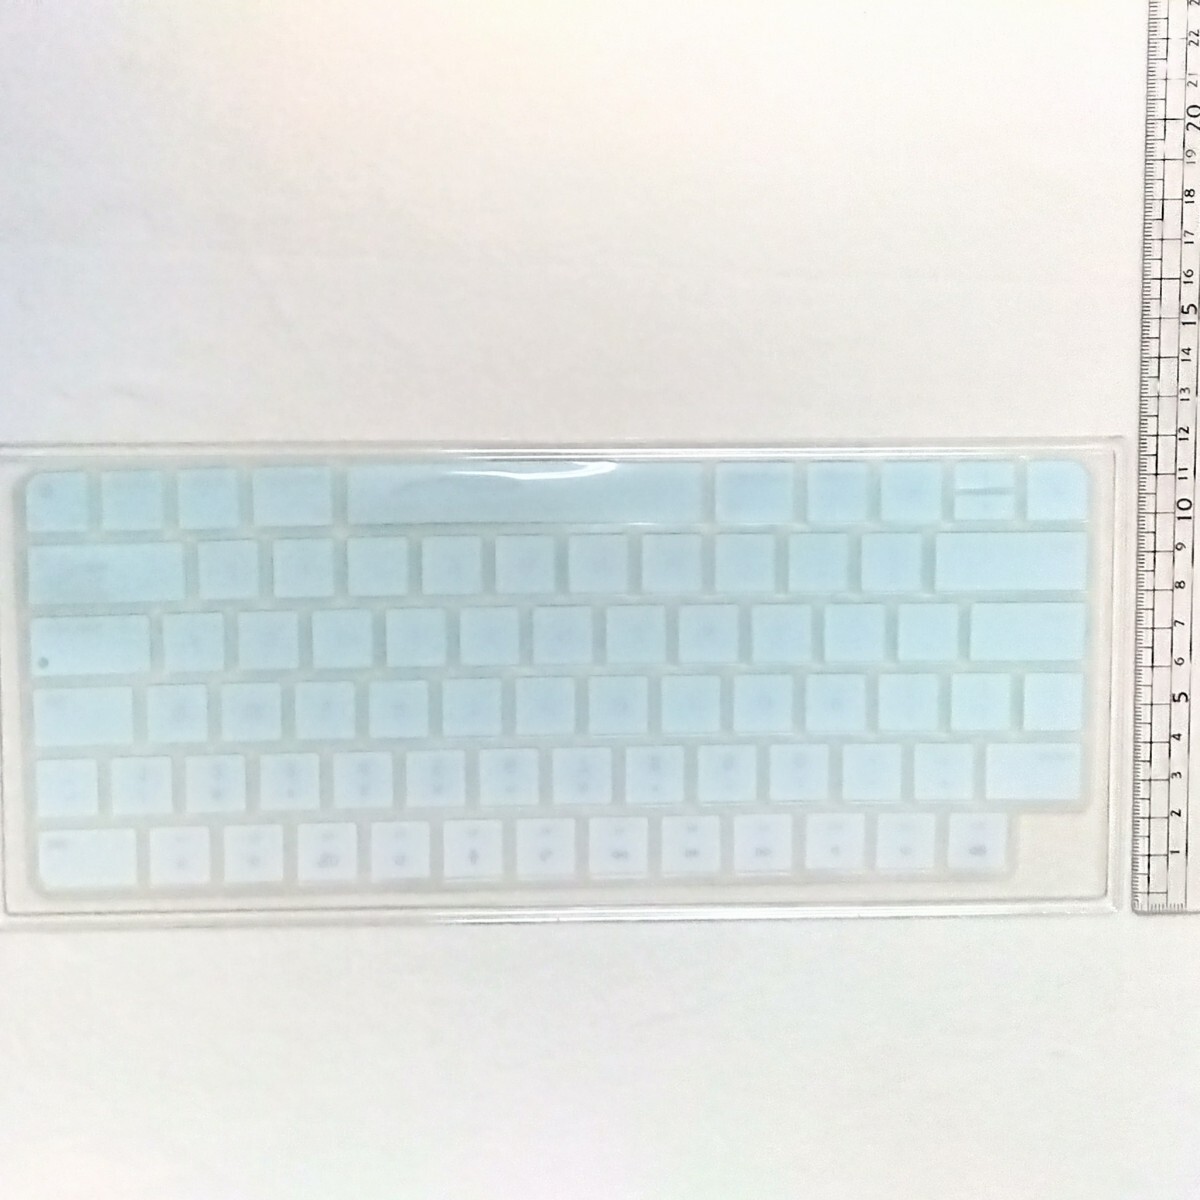 マジックキーボード US 英語 キーボードカバー MacBook Pro/MacBook Air キーボードカバー キーボードフィルム バックライト 27.8×11.2cm